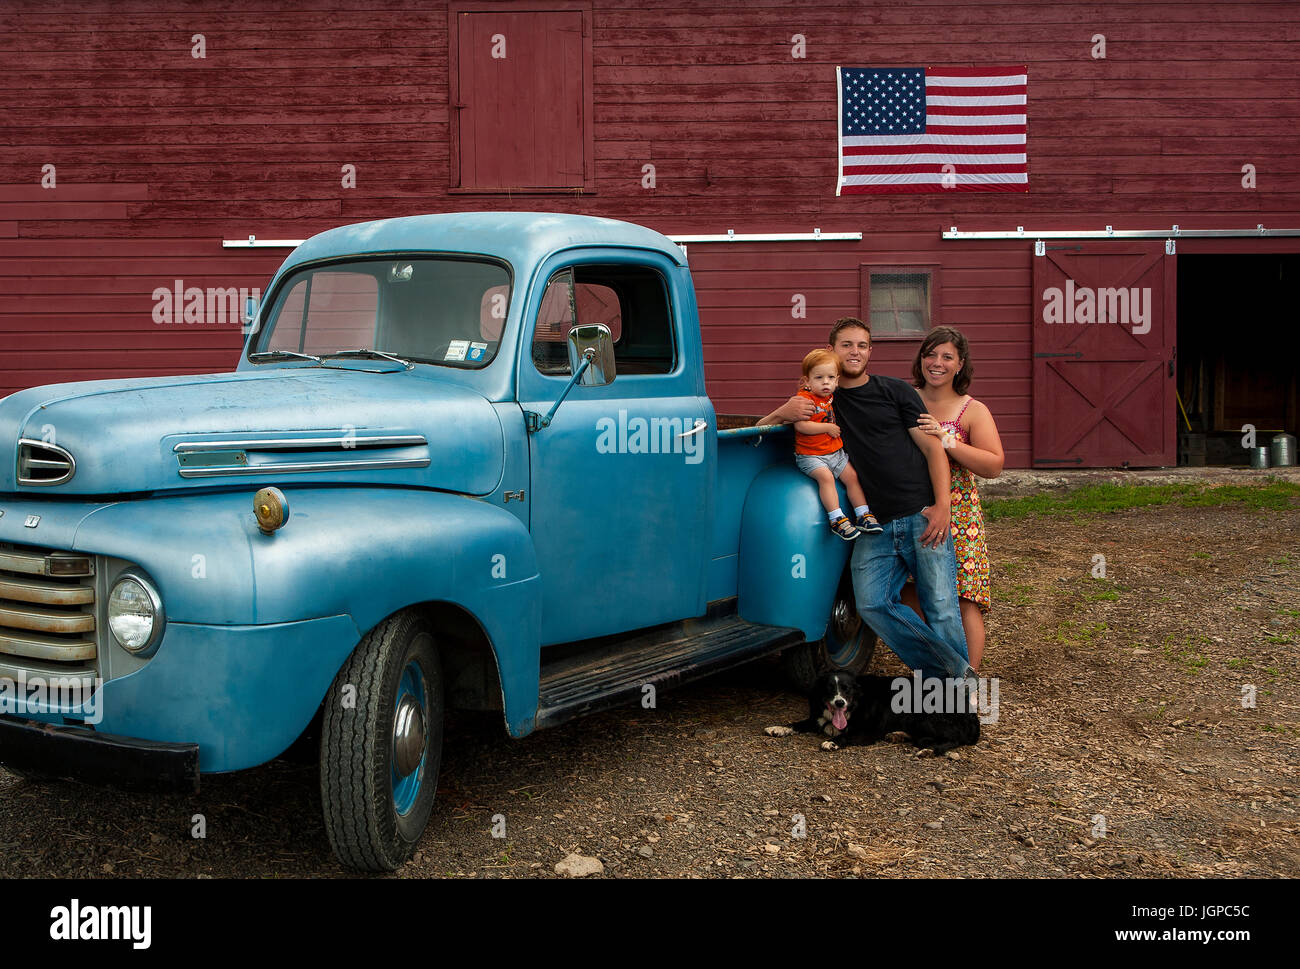 Amerikanischen Farmerfamilie mit Vintage blau LKW vor der roten Scheune mit amerikanischen Flagge, unter der Leitung Hund zu Füßen, rote Kleinkind Stockfoto